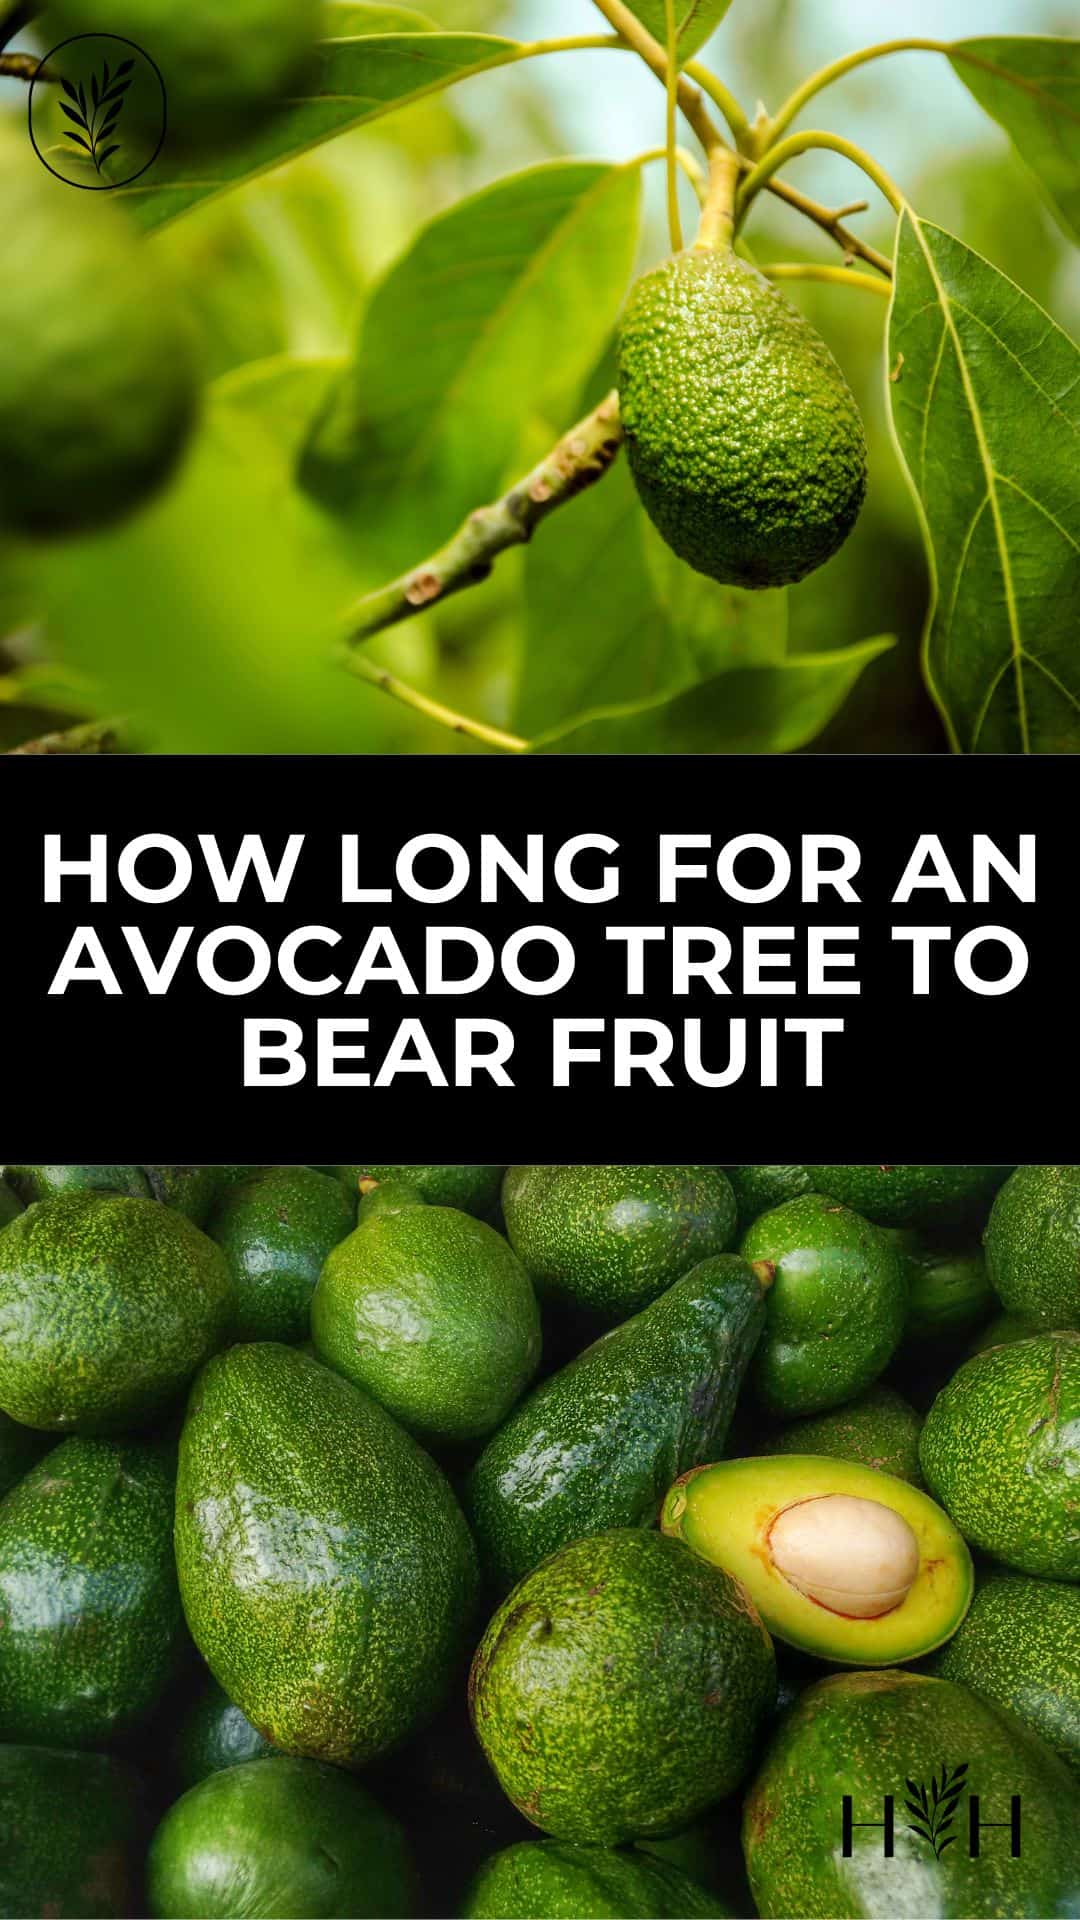 How long for an avocado tree to bear fruit via @home4theharvest